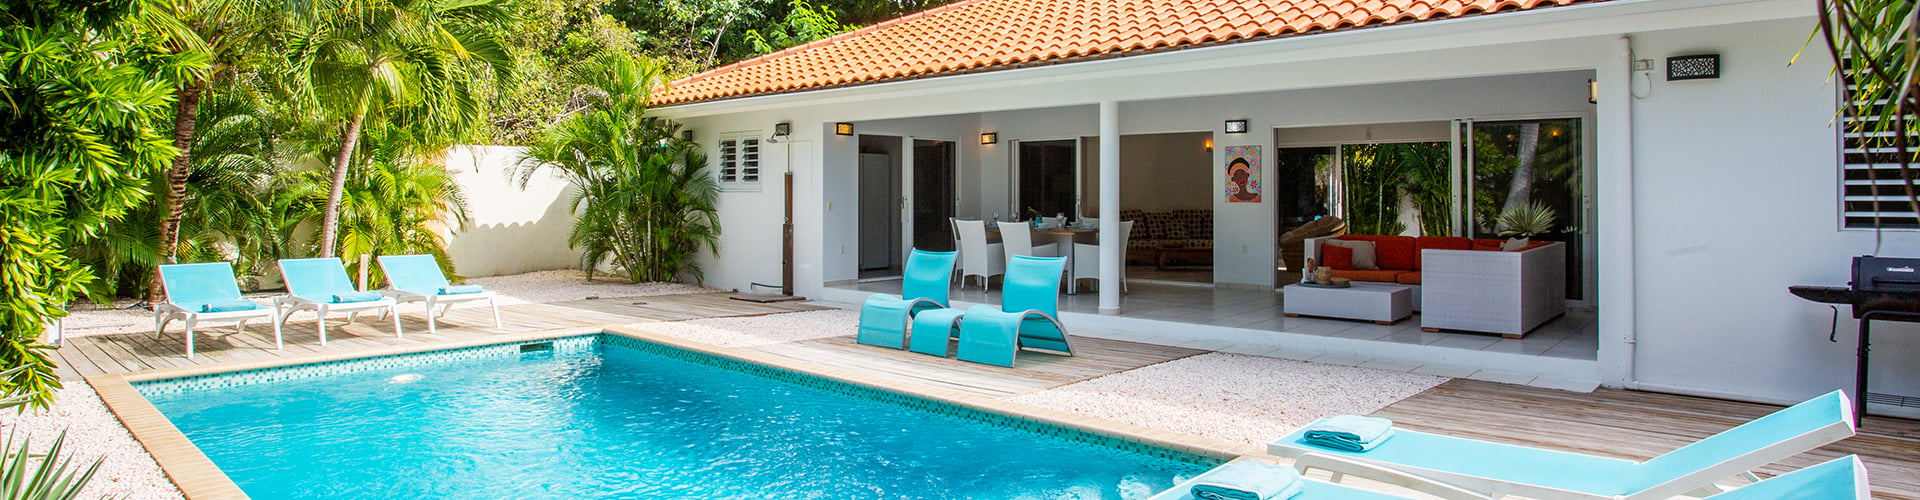 Vakantiehuizen op Curacao met een prive zwembad